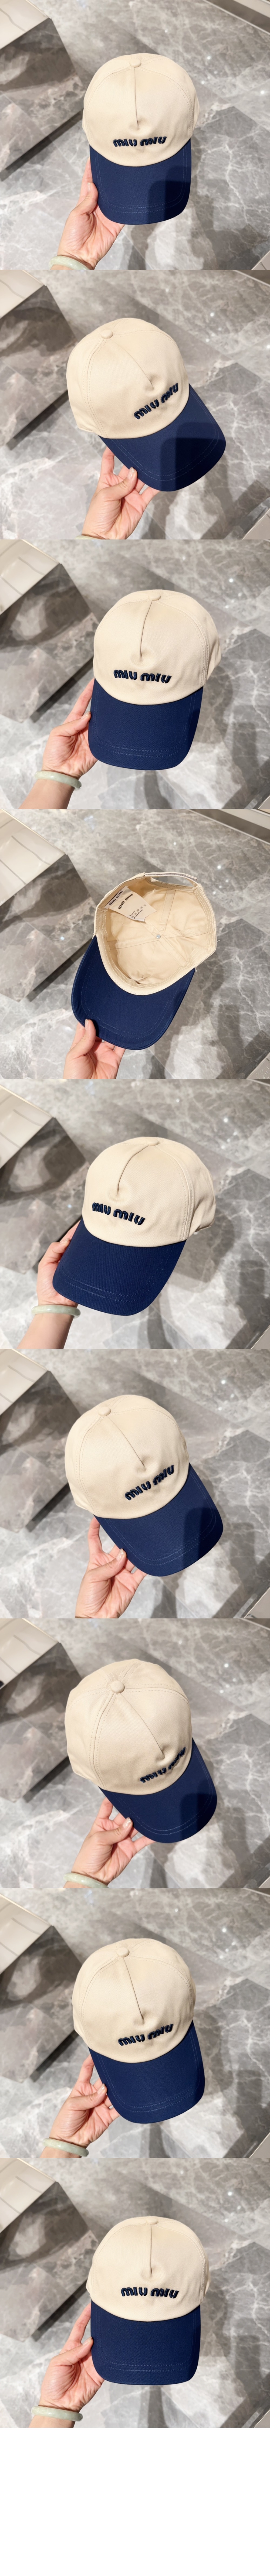 미러급레플리카사이트 | 명품레플리카 전문 쇼핑몰  | 딥퀄 - 드릴 야구 모자 5HC179 &gt; 미우미우